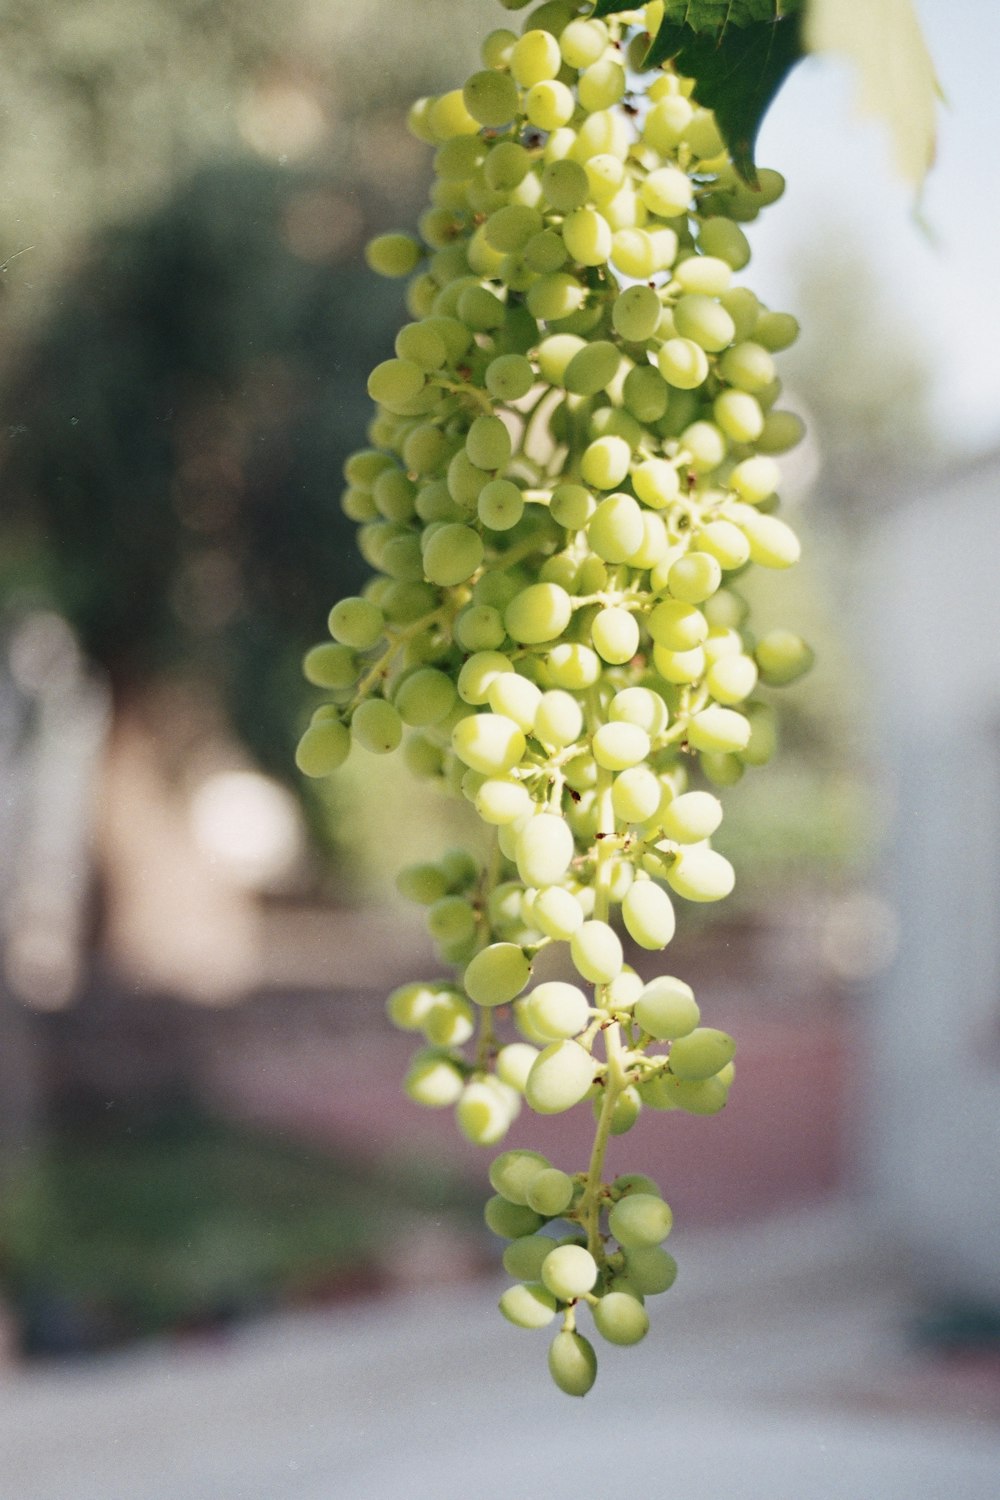 un grappolo d'uva verde appeso a un albero